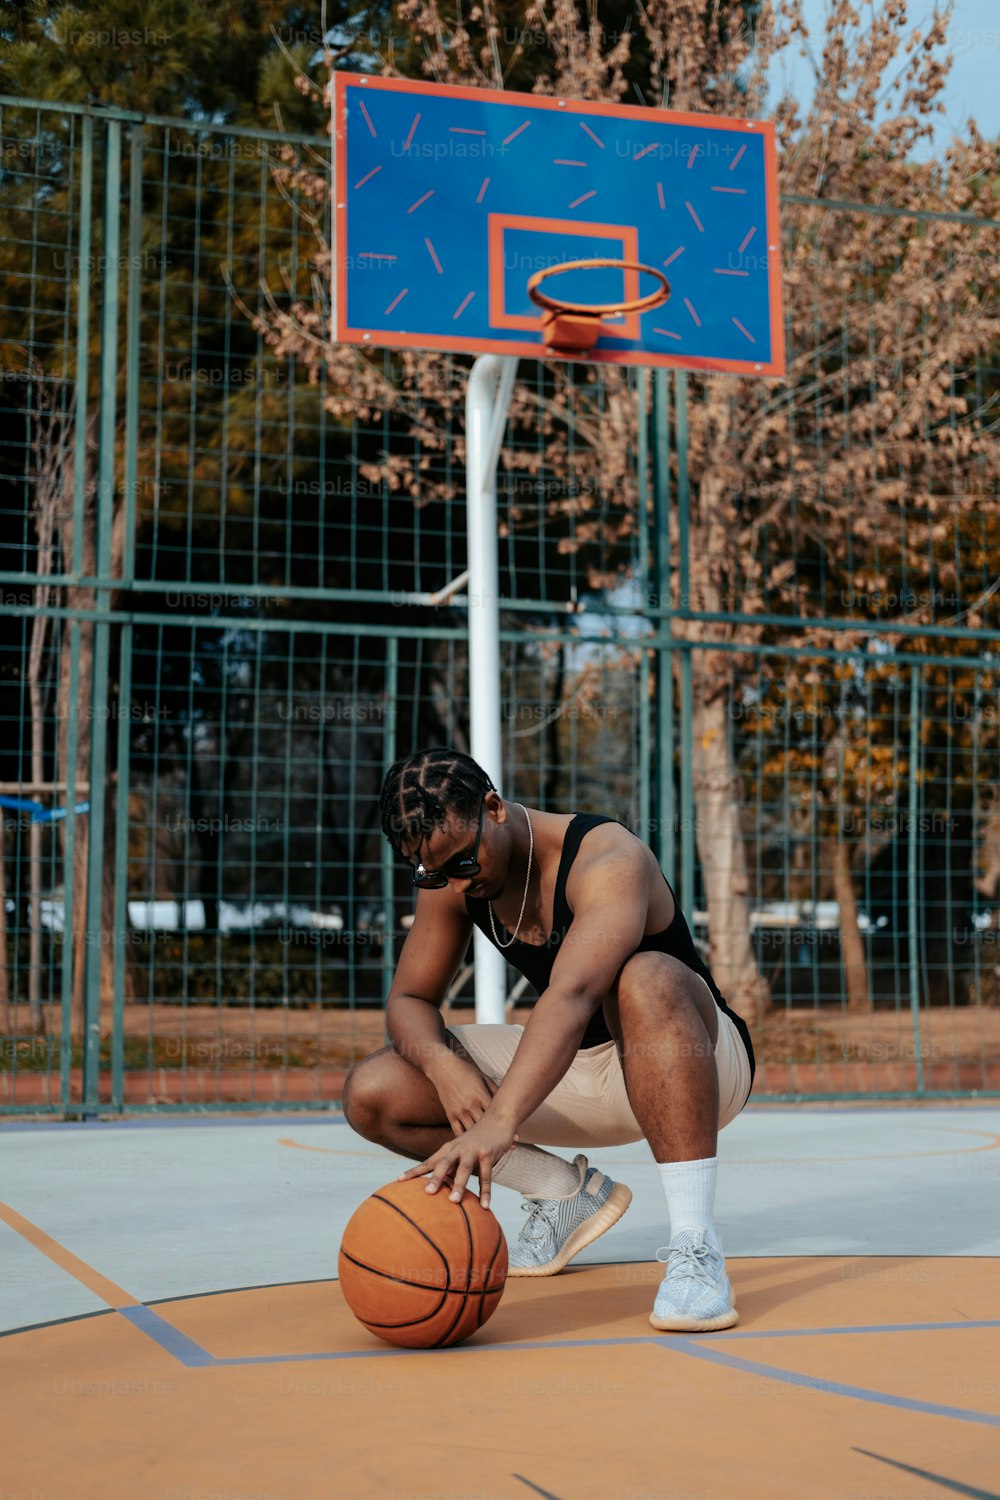 Ein Mann kniet neben einem Basketball auf einem Platz